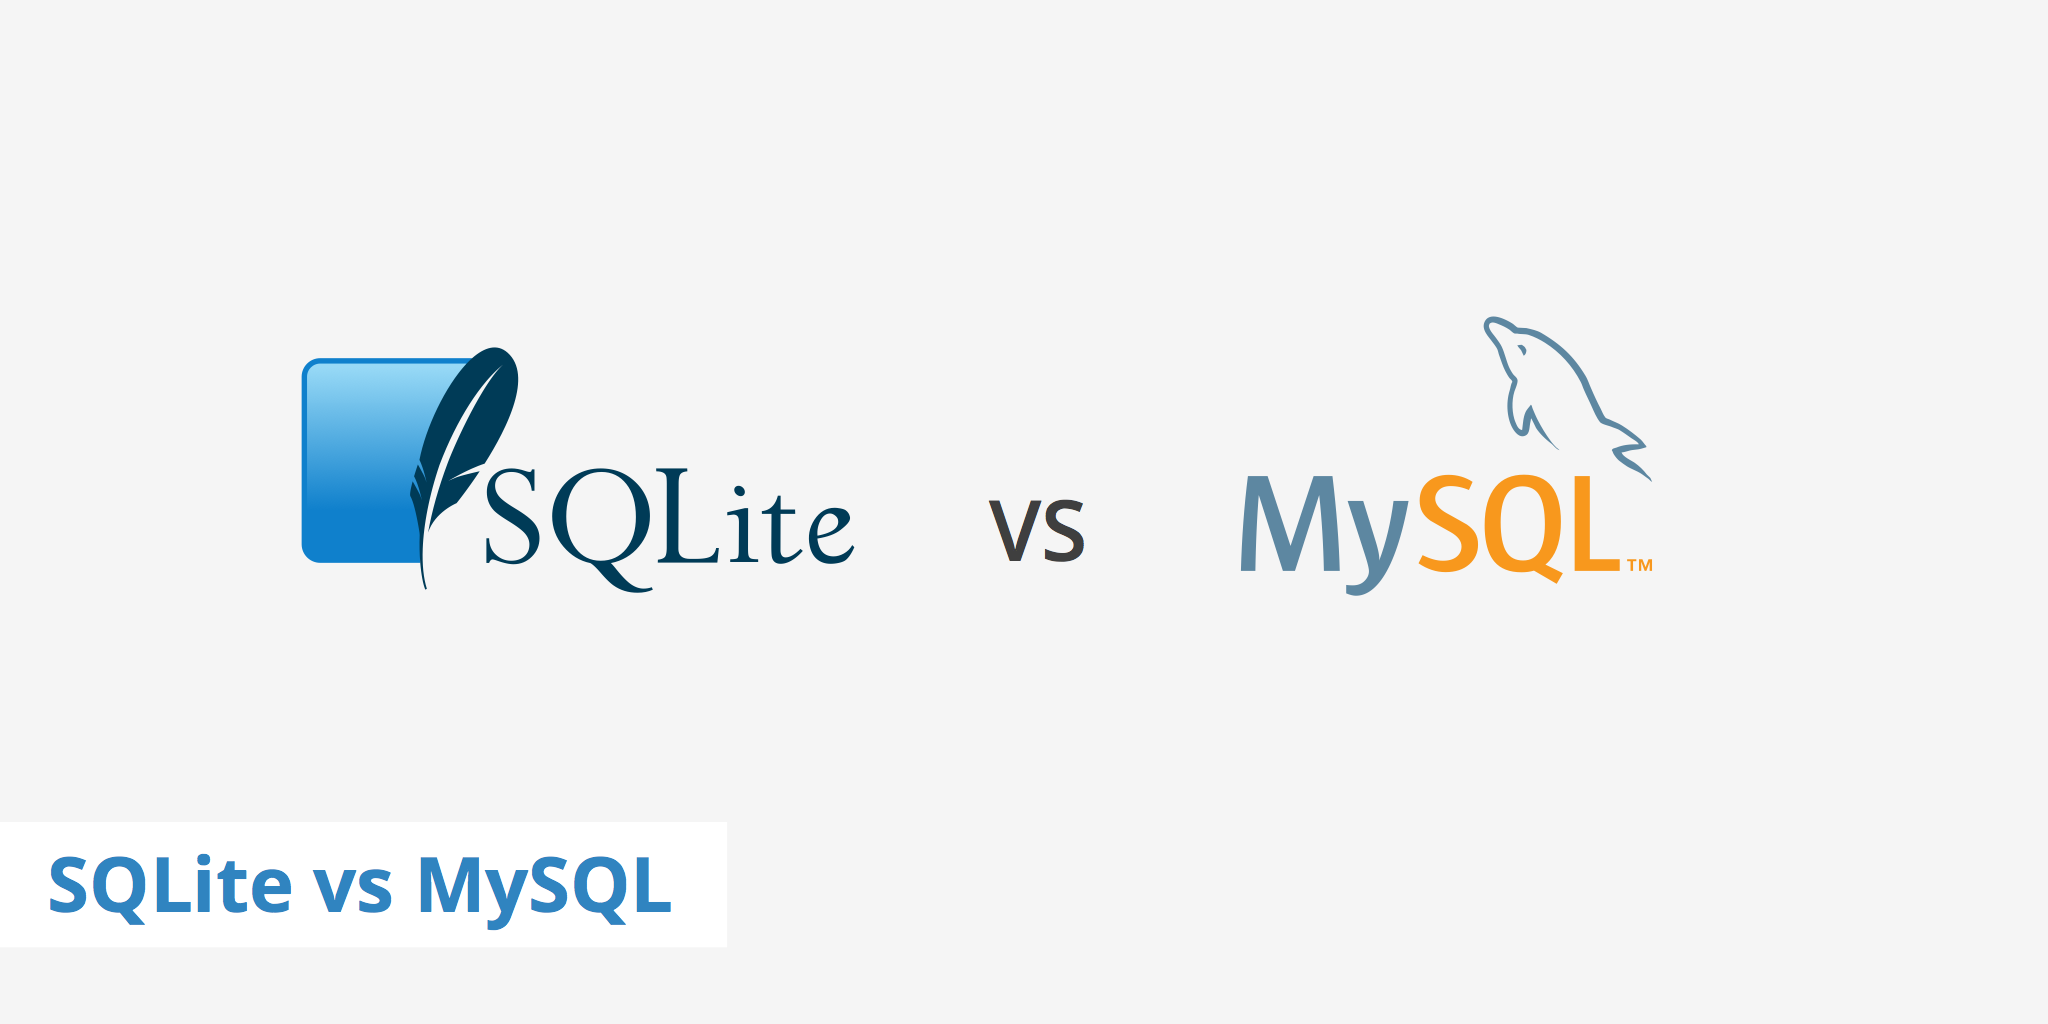 SQLite database vs MySQL database